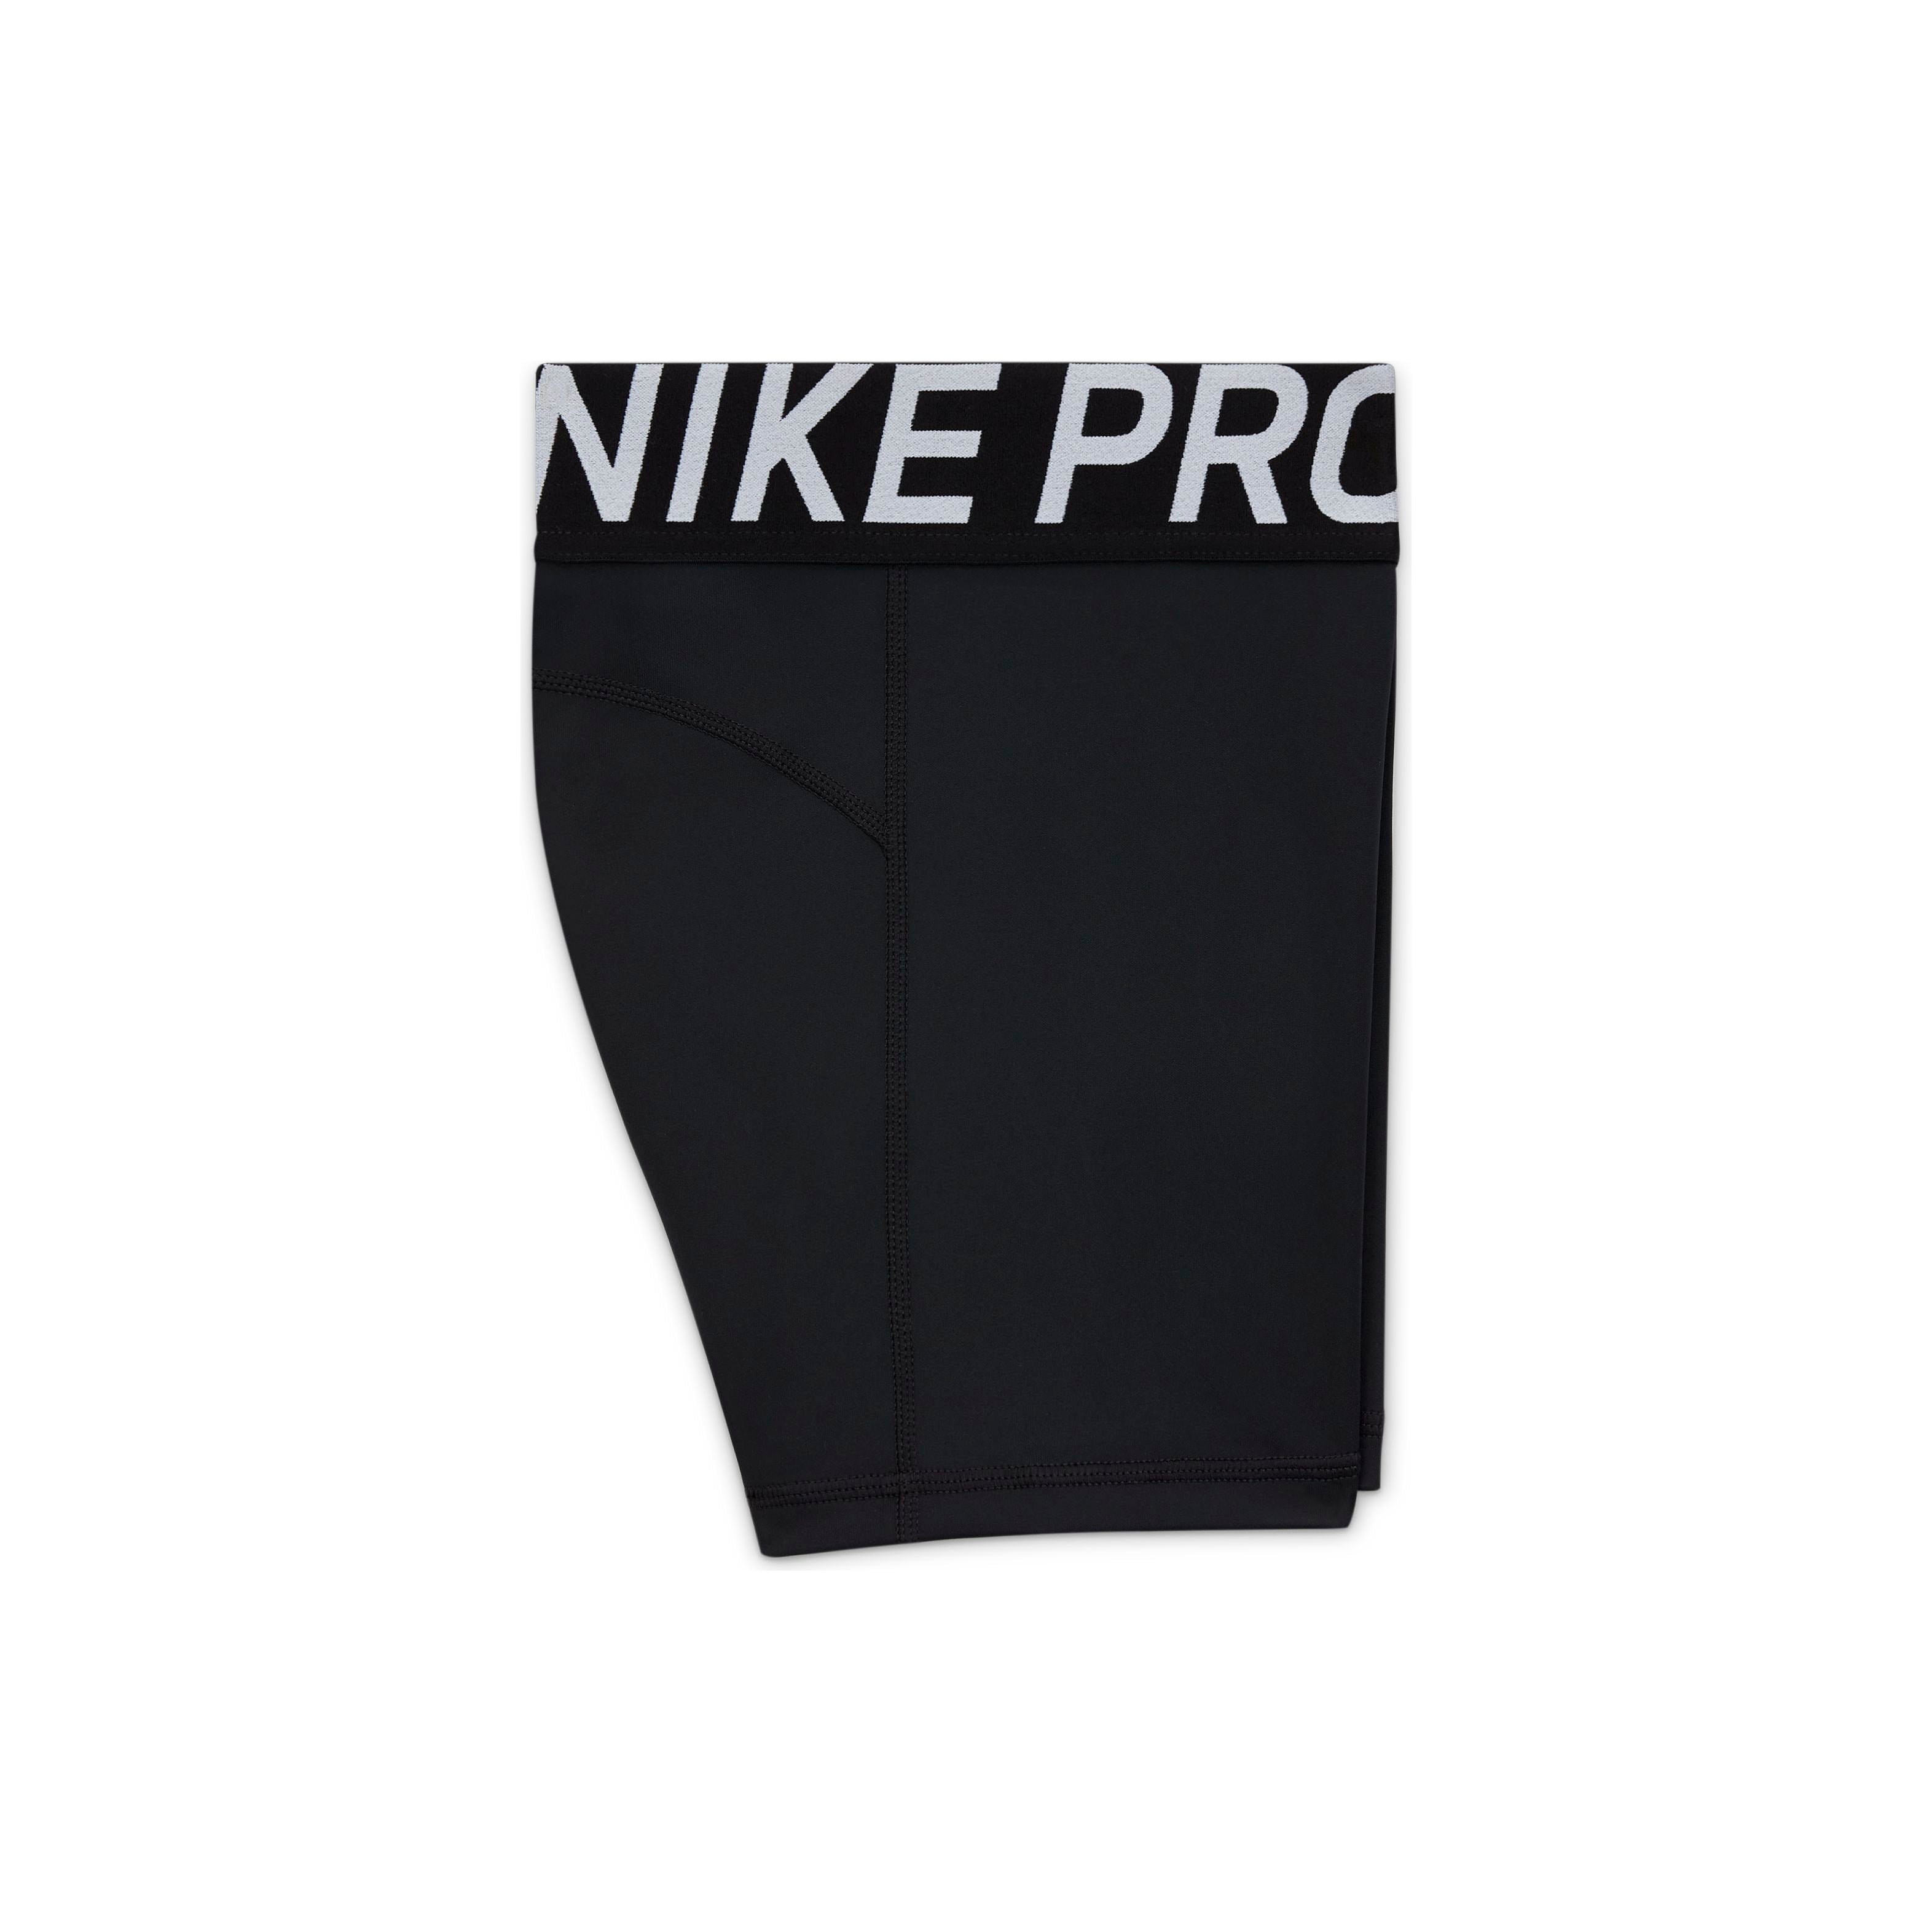  Nike Pros